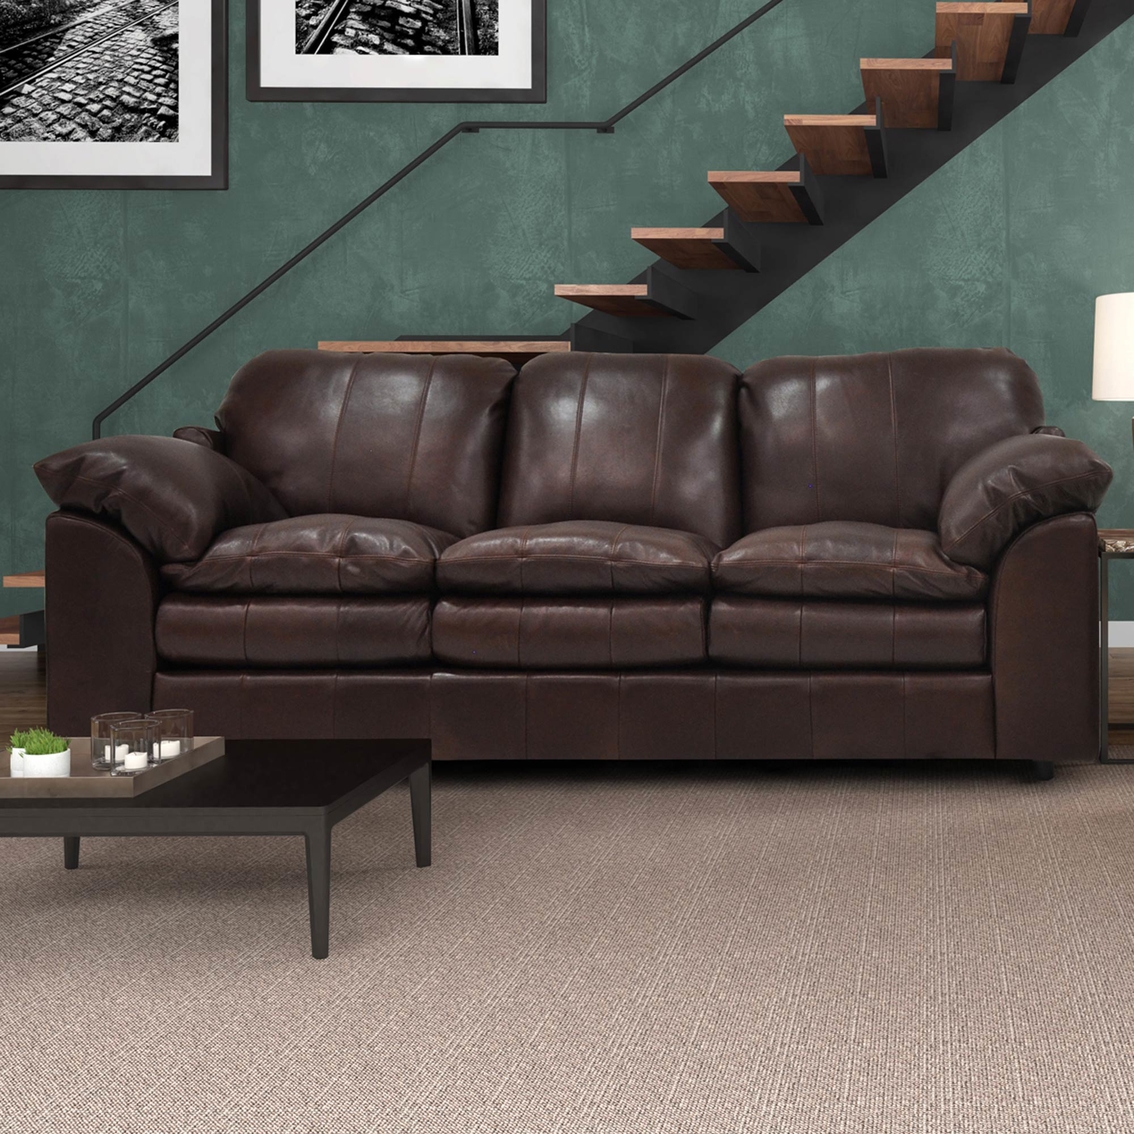 Omnia Leather Ventura Leather Sofa - Image 2 of 2